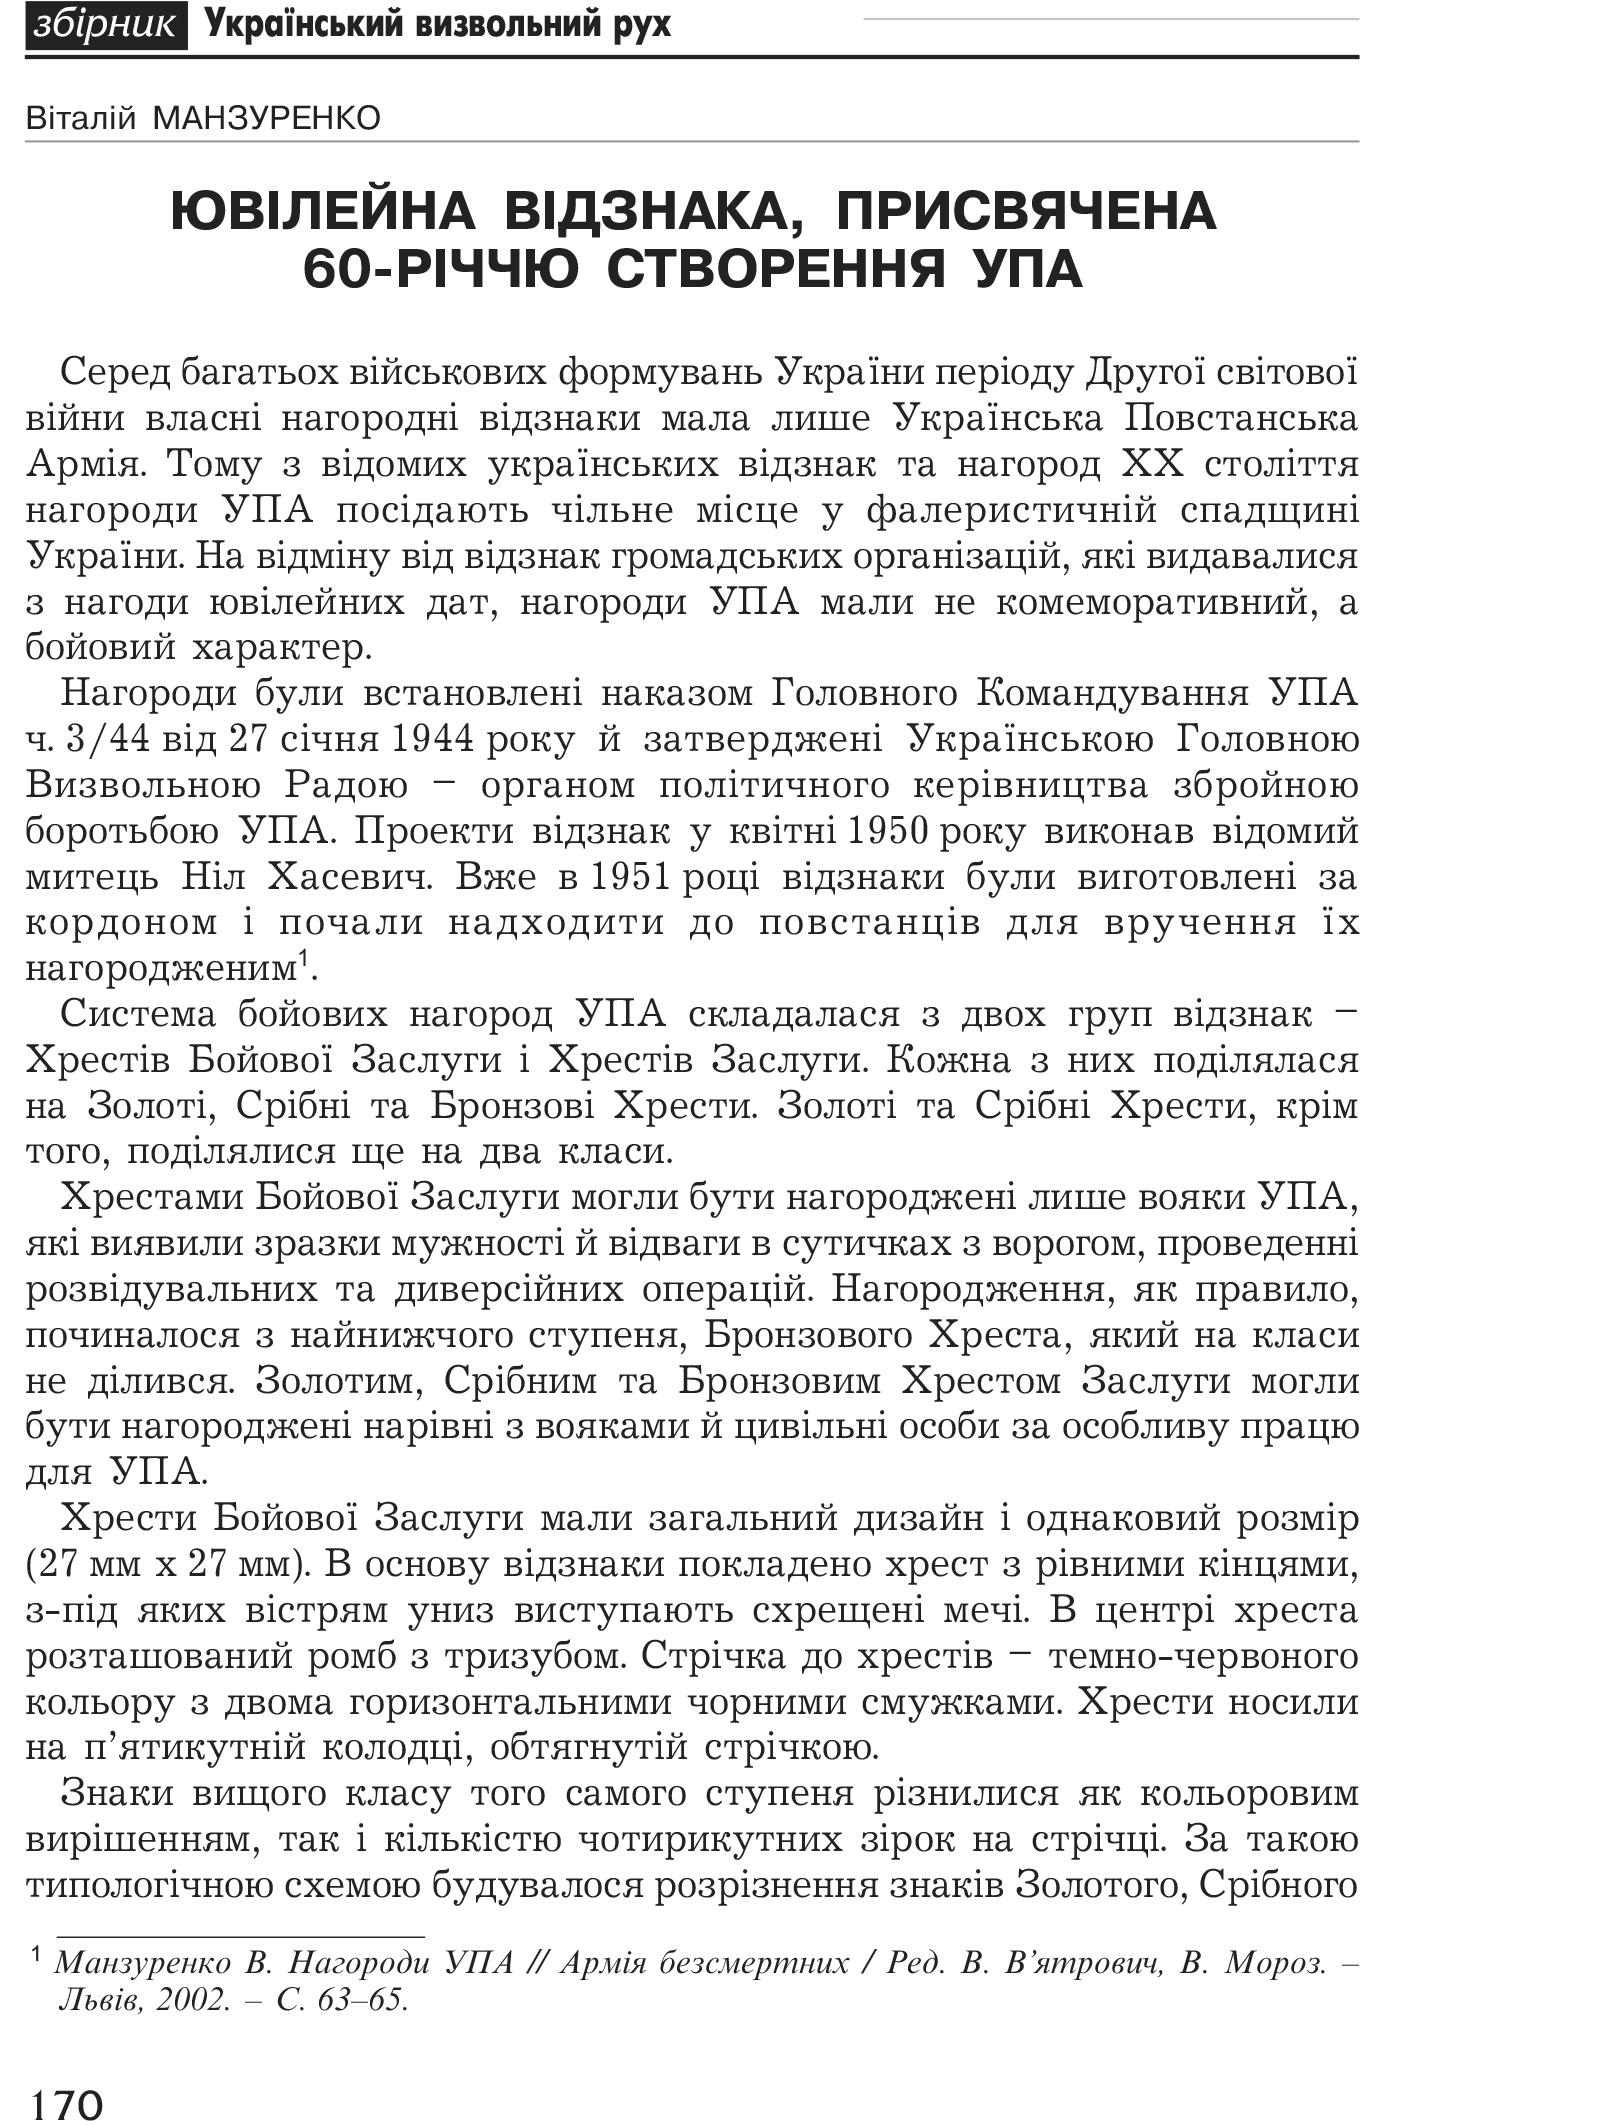 Український визвольний рух №1, ст. 170 - 175